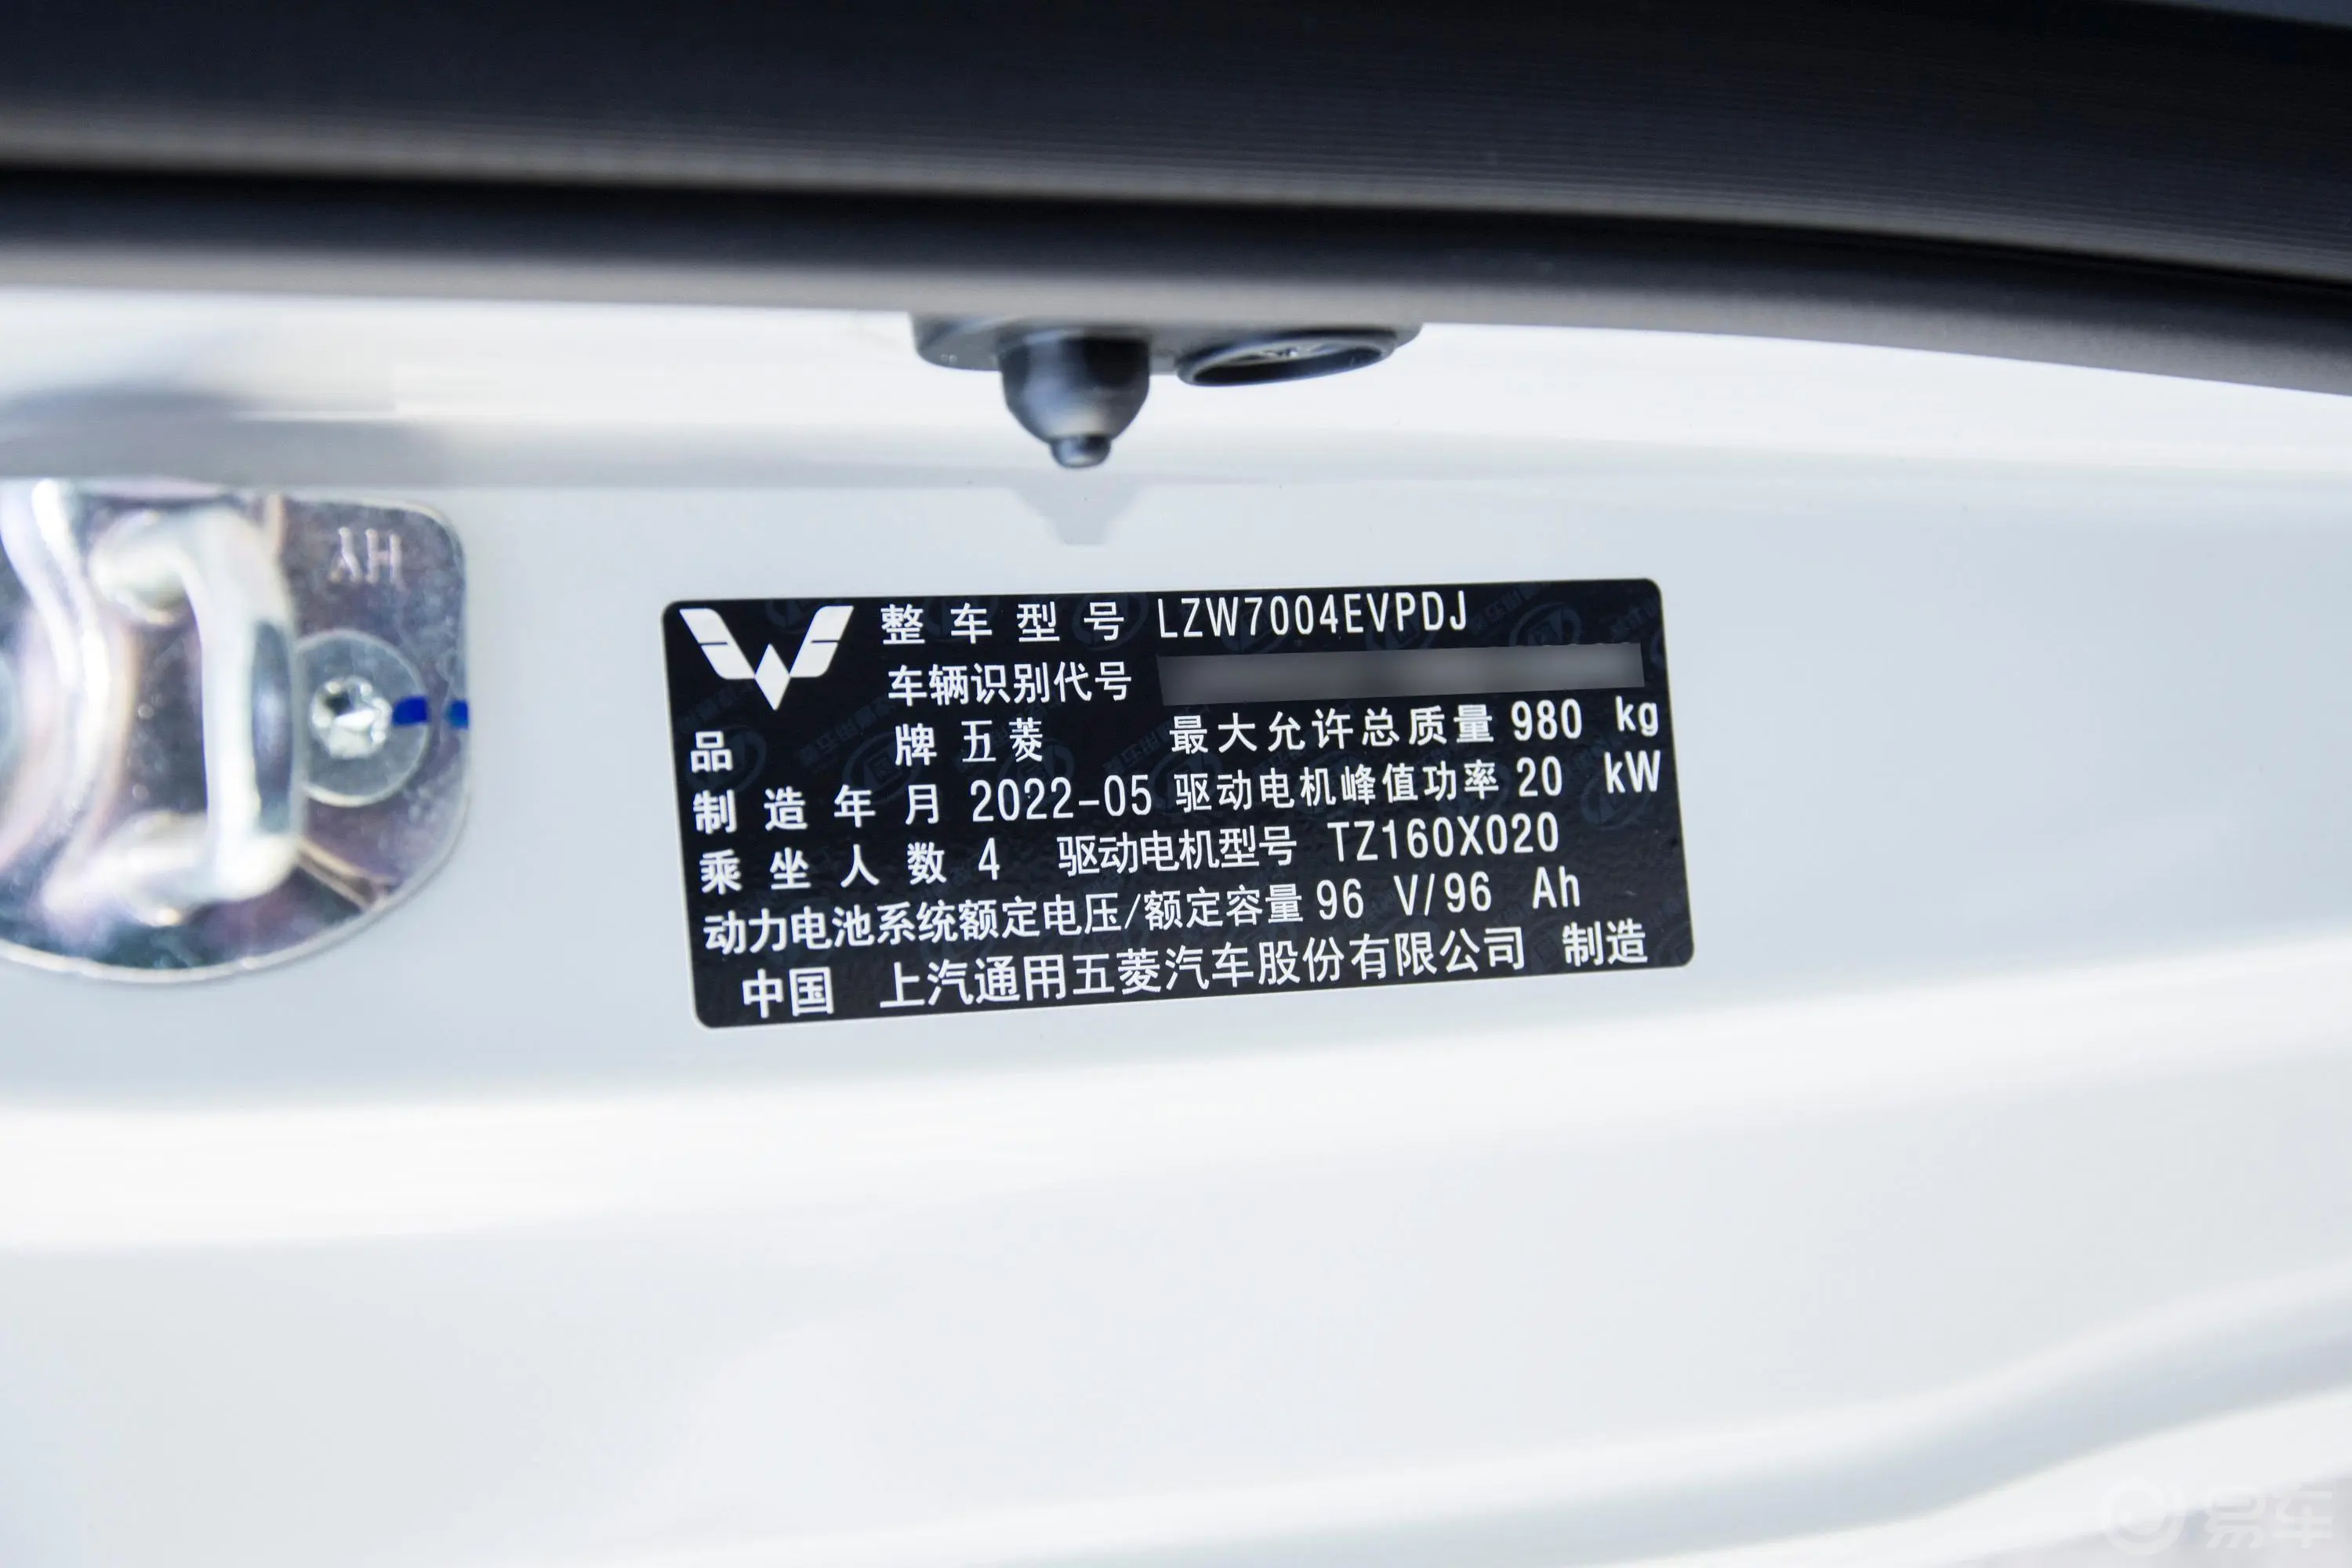 宏光MINIEV马卡龙 120km 时尚款 磷酸铁锂车辆信息铭牌